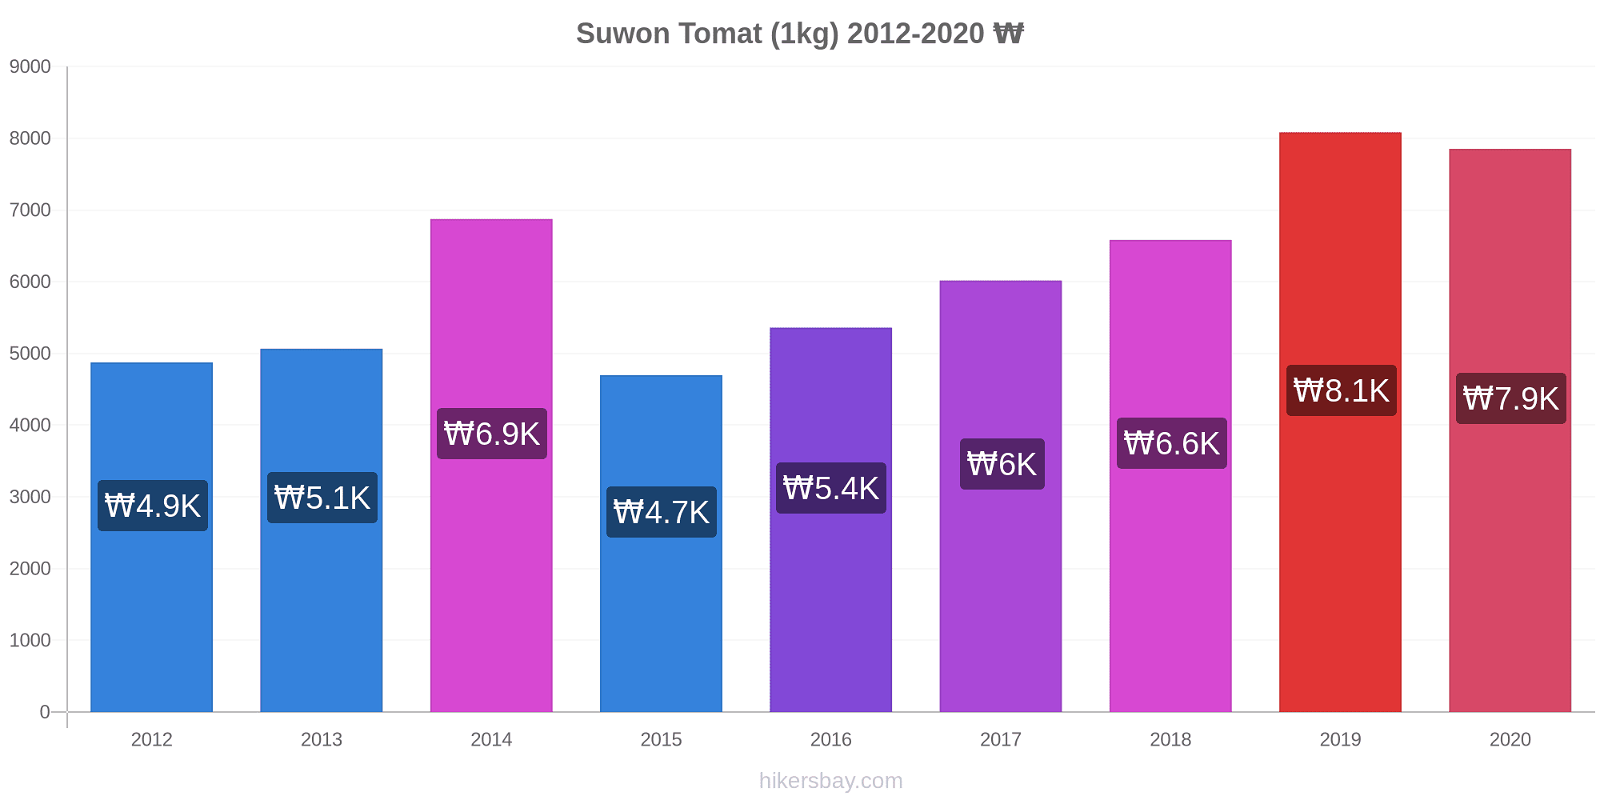 Suwon prisændringer Tomat (1kg) hikersbay.com